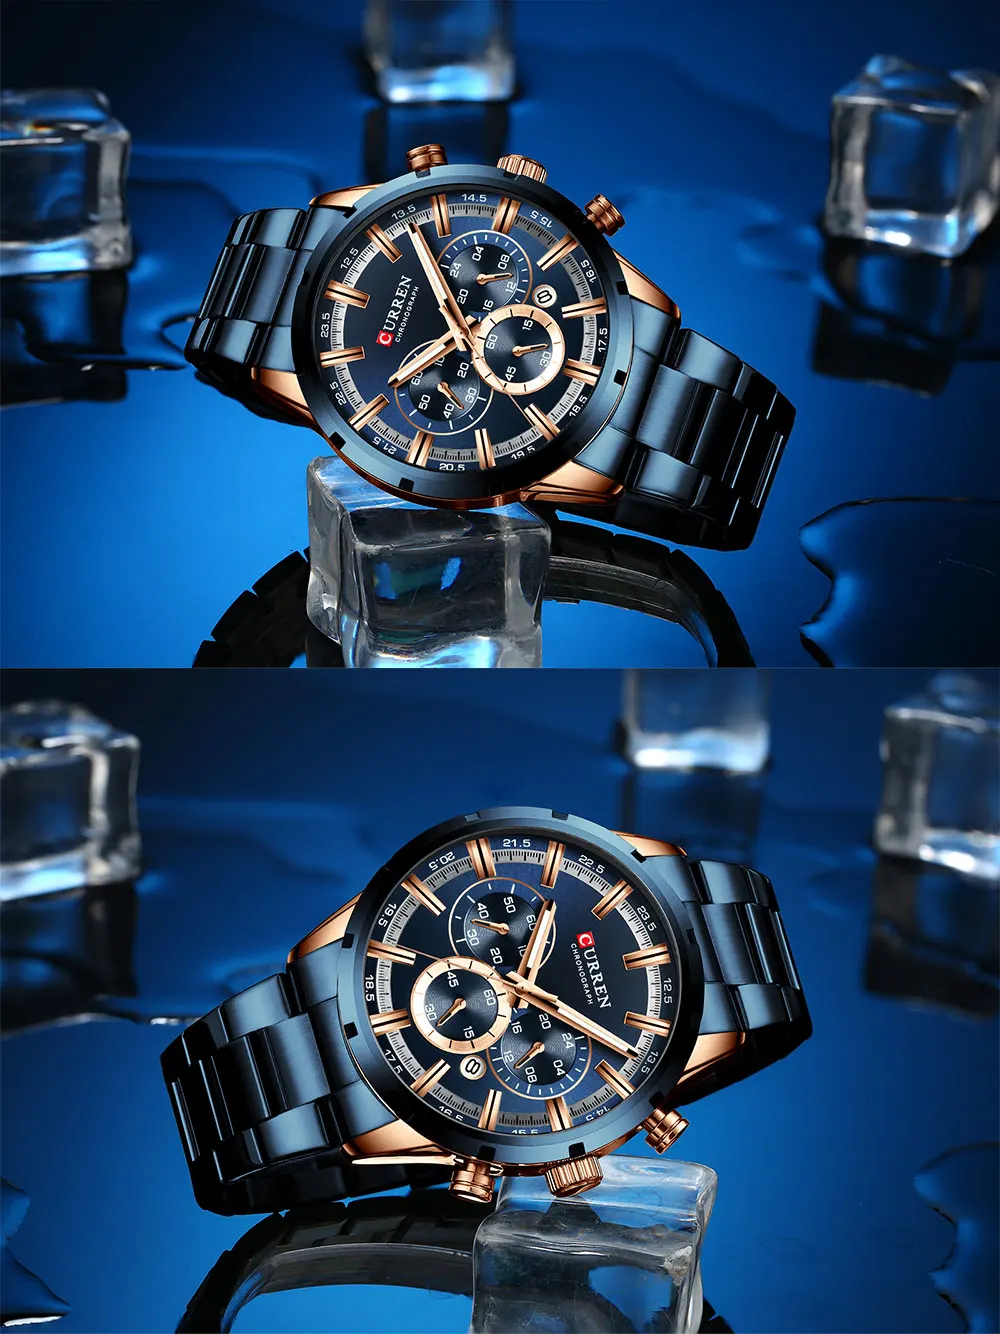 Для Мужчин's часы Curren Роскошные, брендовые Бизнес кварцевые часы Для мужчин Водонепроницаемый с секундомером и календарем, мужские часы цвета: золотистый, синий Relogio Masculino